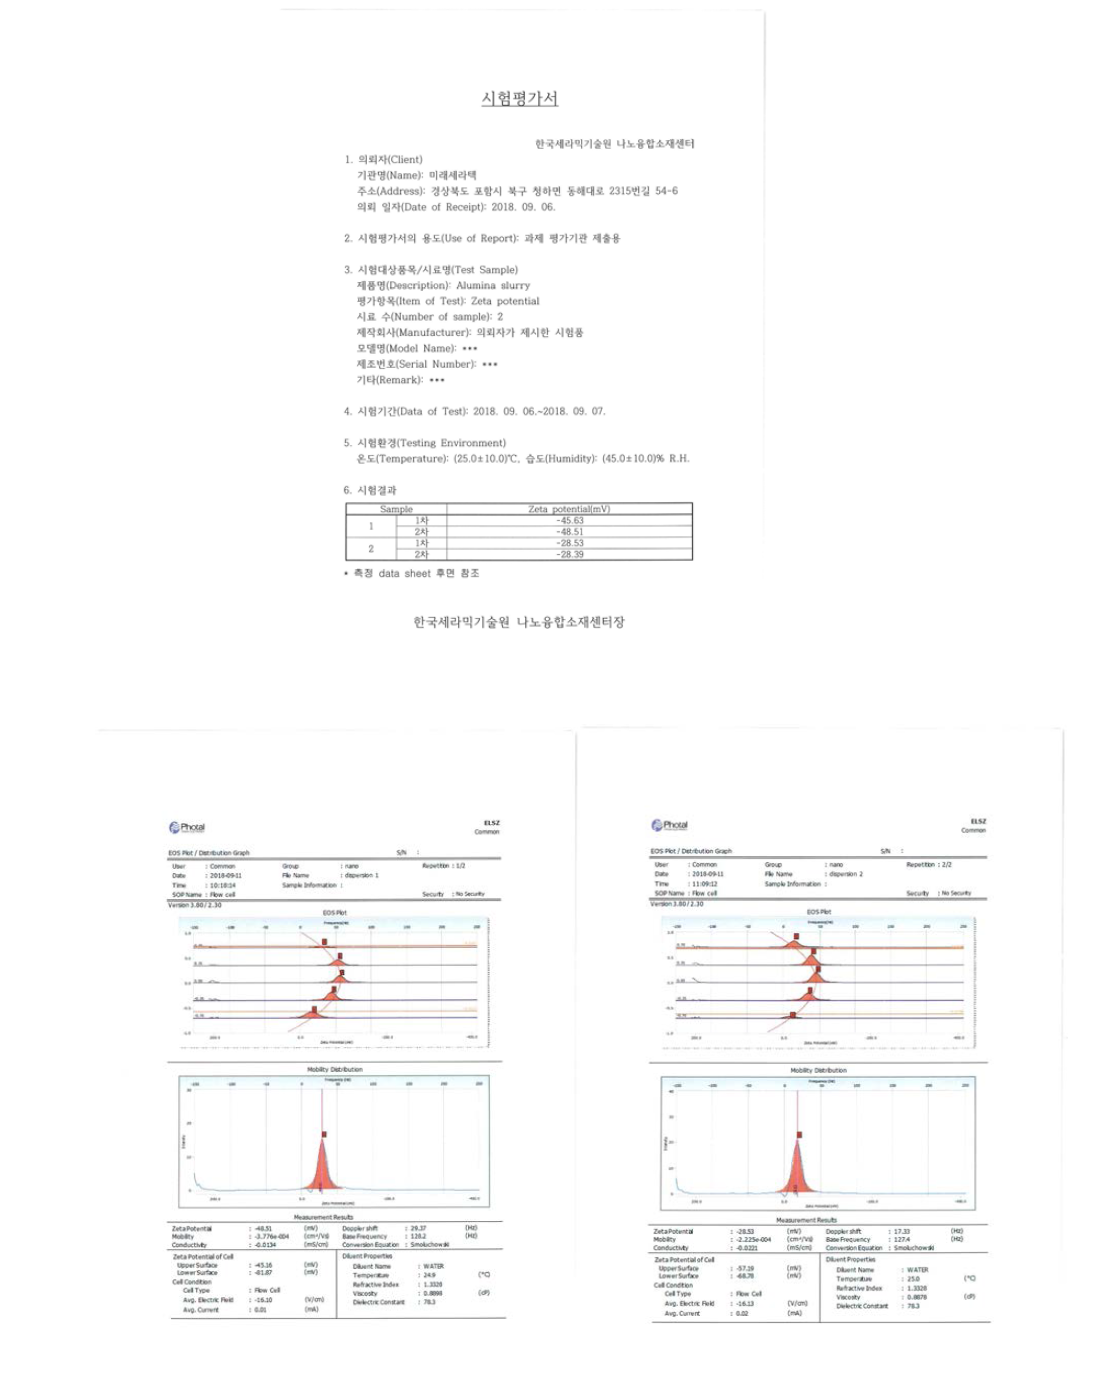 알루미나 슬러리 결합제 종류에 따른 제타 전위 측정 data (한국 세라믹 기술원 측정 data)